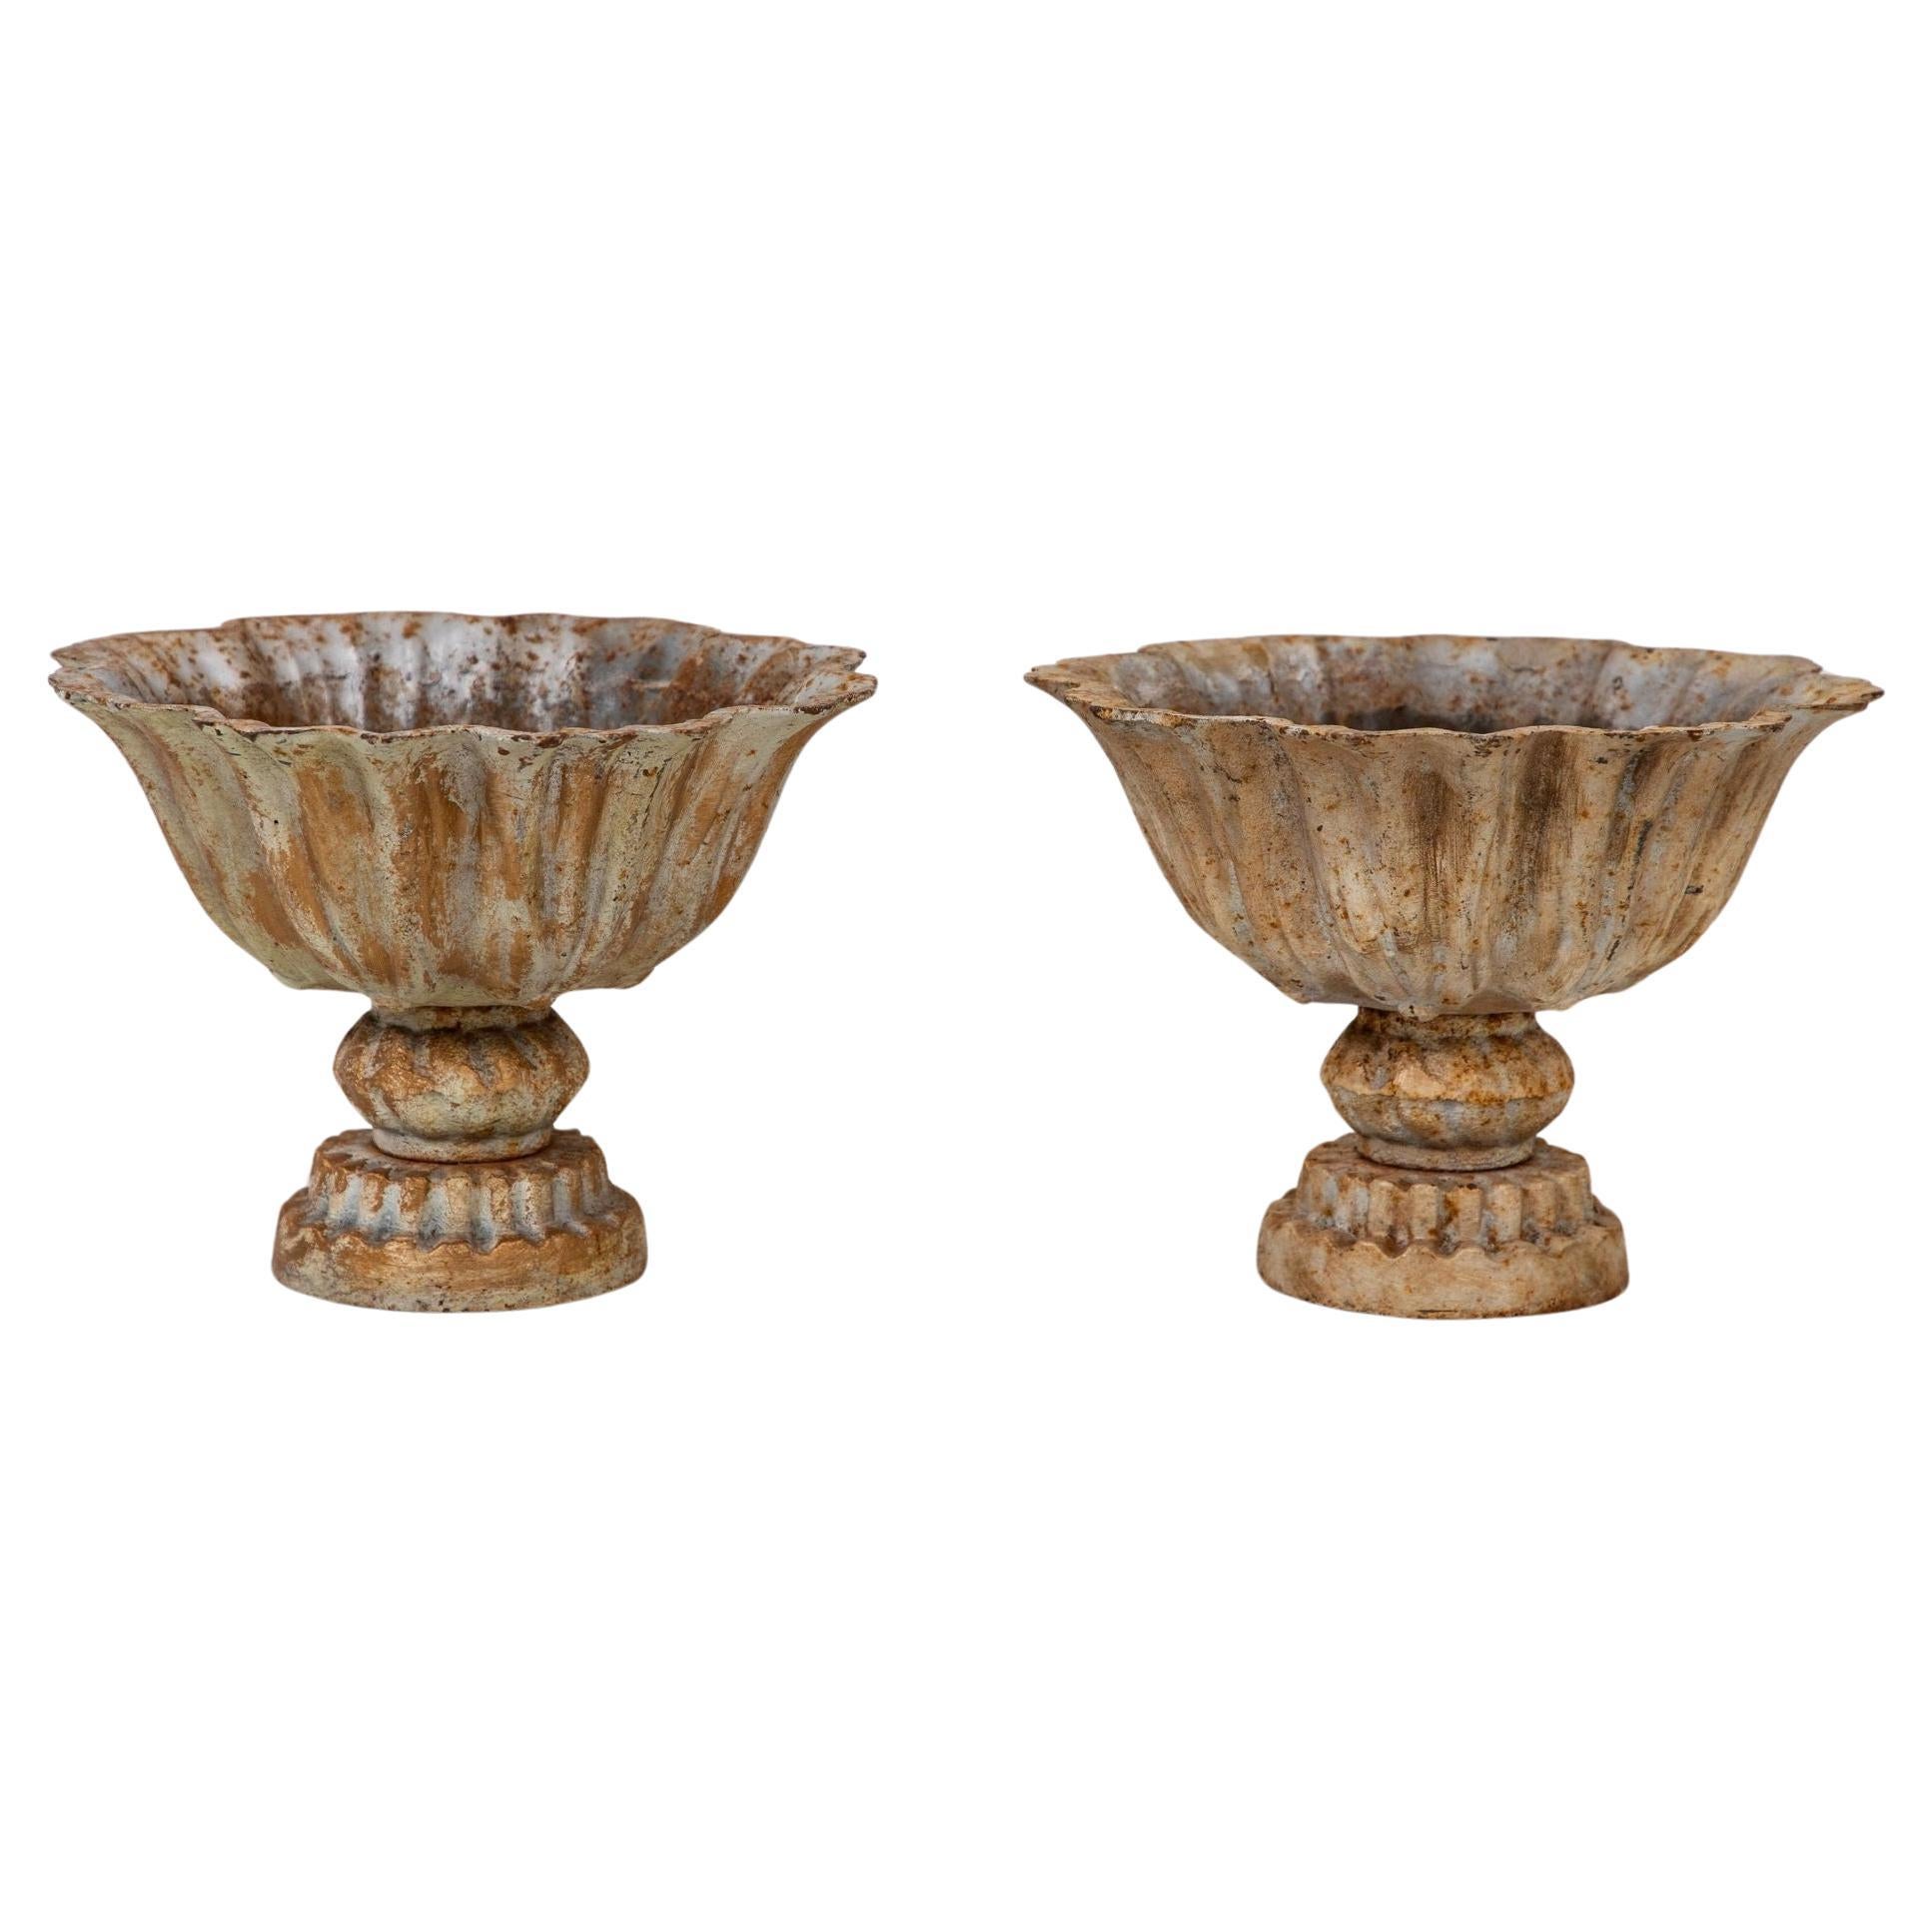 Paar Verdigris-Tazzas oder Urnen aus lackiertem Eisen, englisch, spätes 20. Jahrhundert